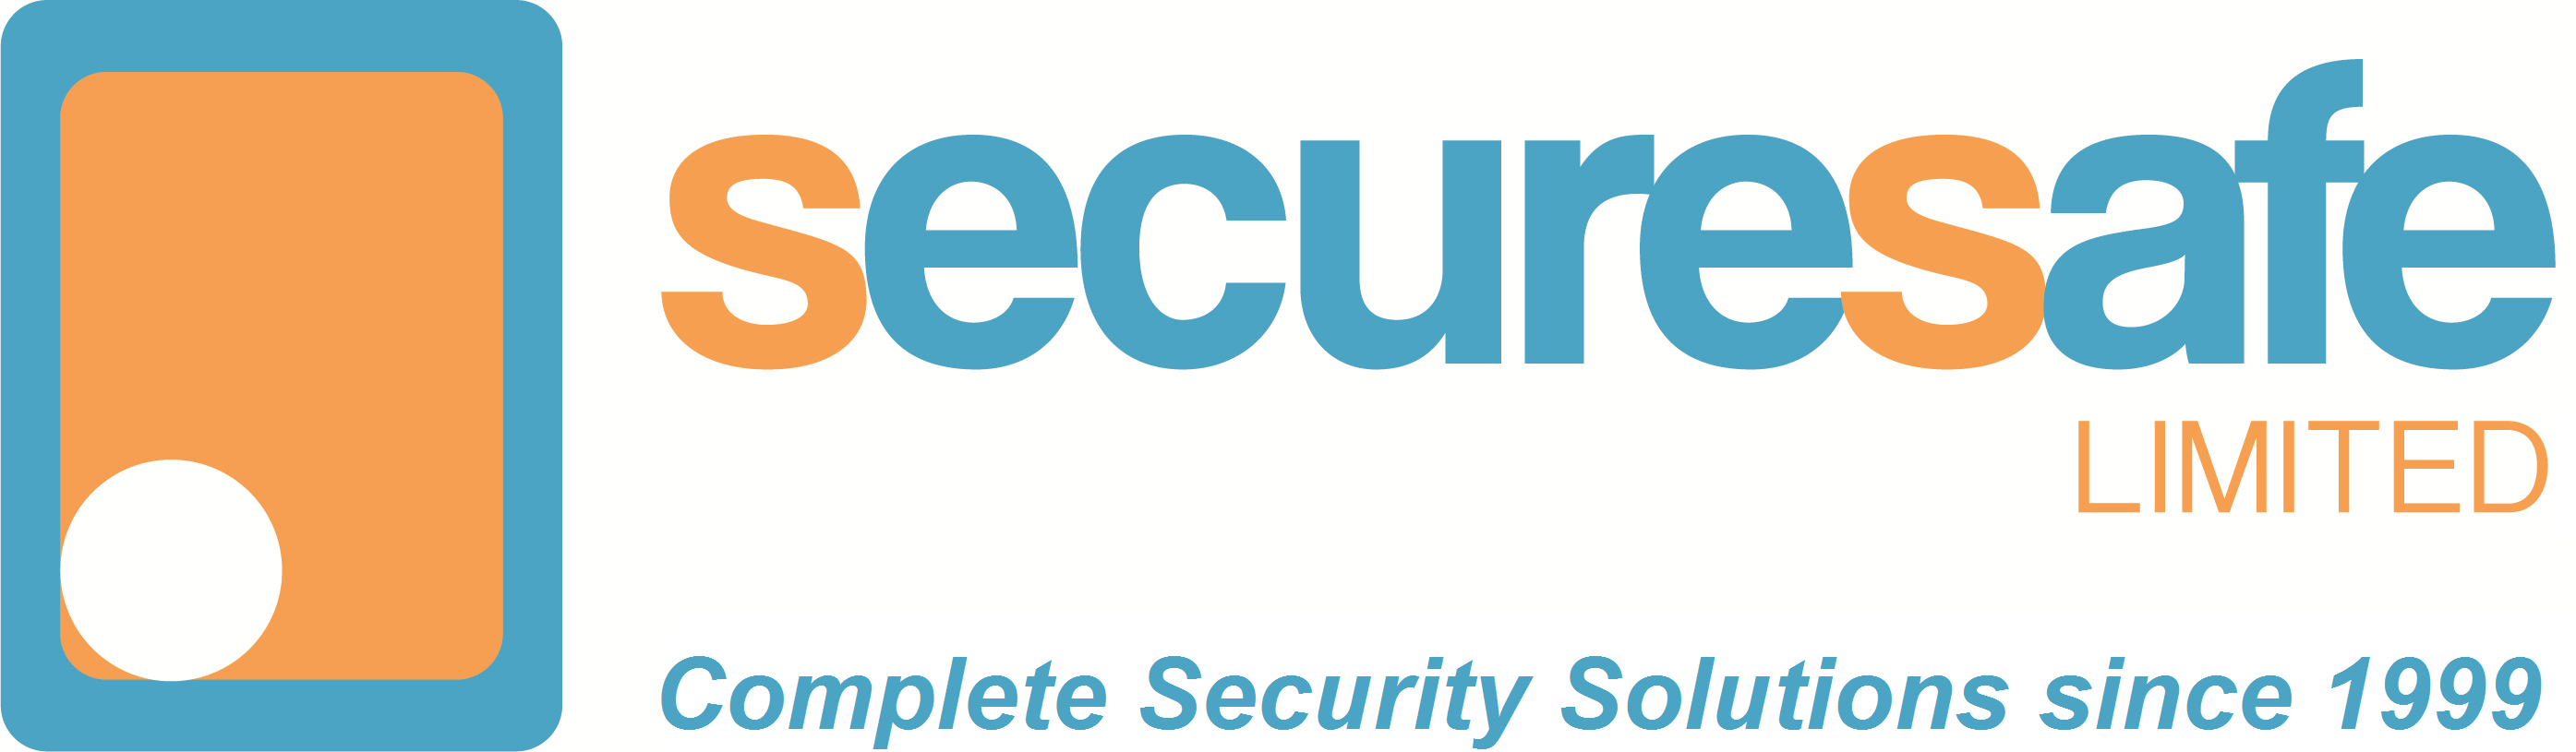 Securesafe Ltd